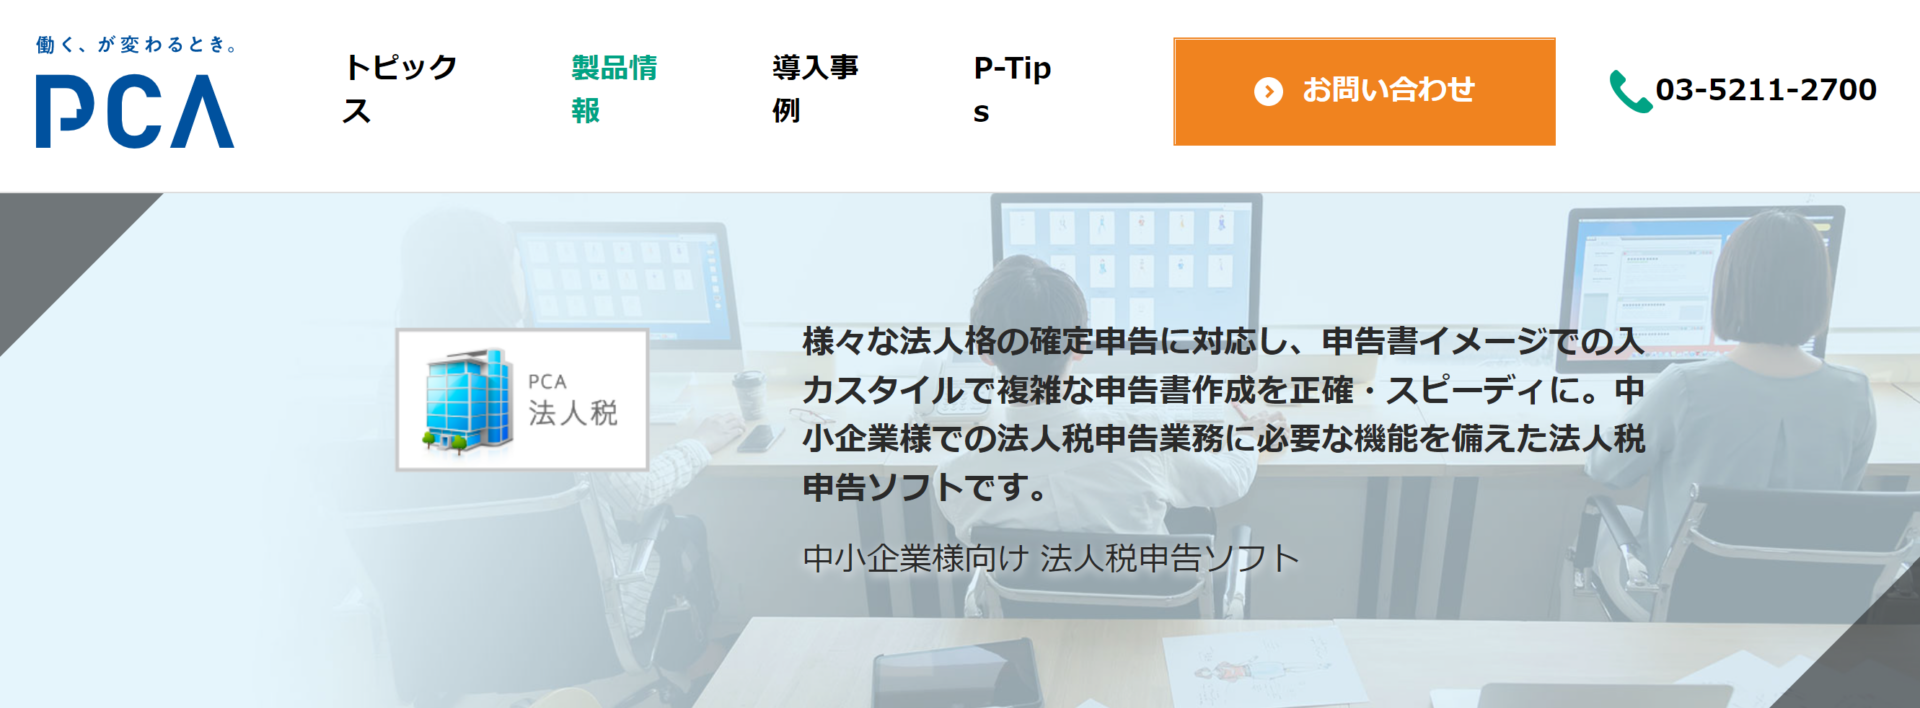 法人税申告ソフト_おすすめ_PCA